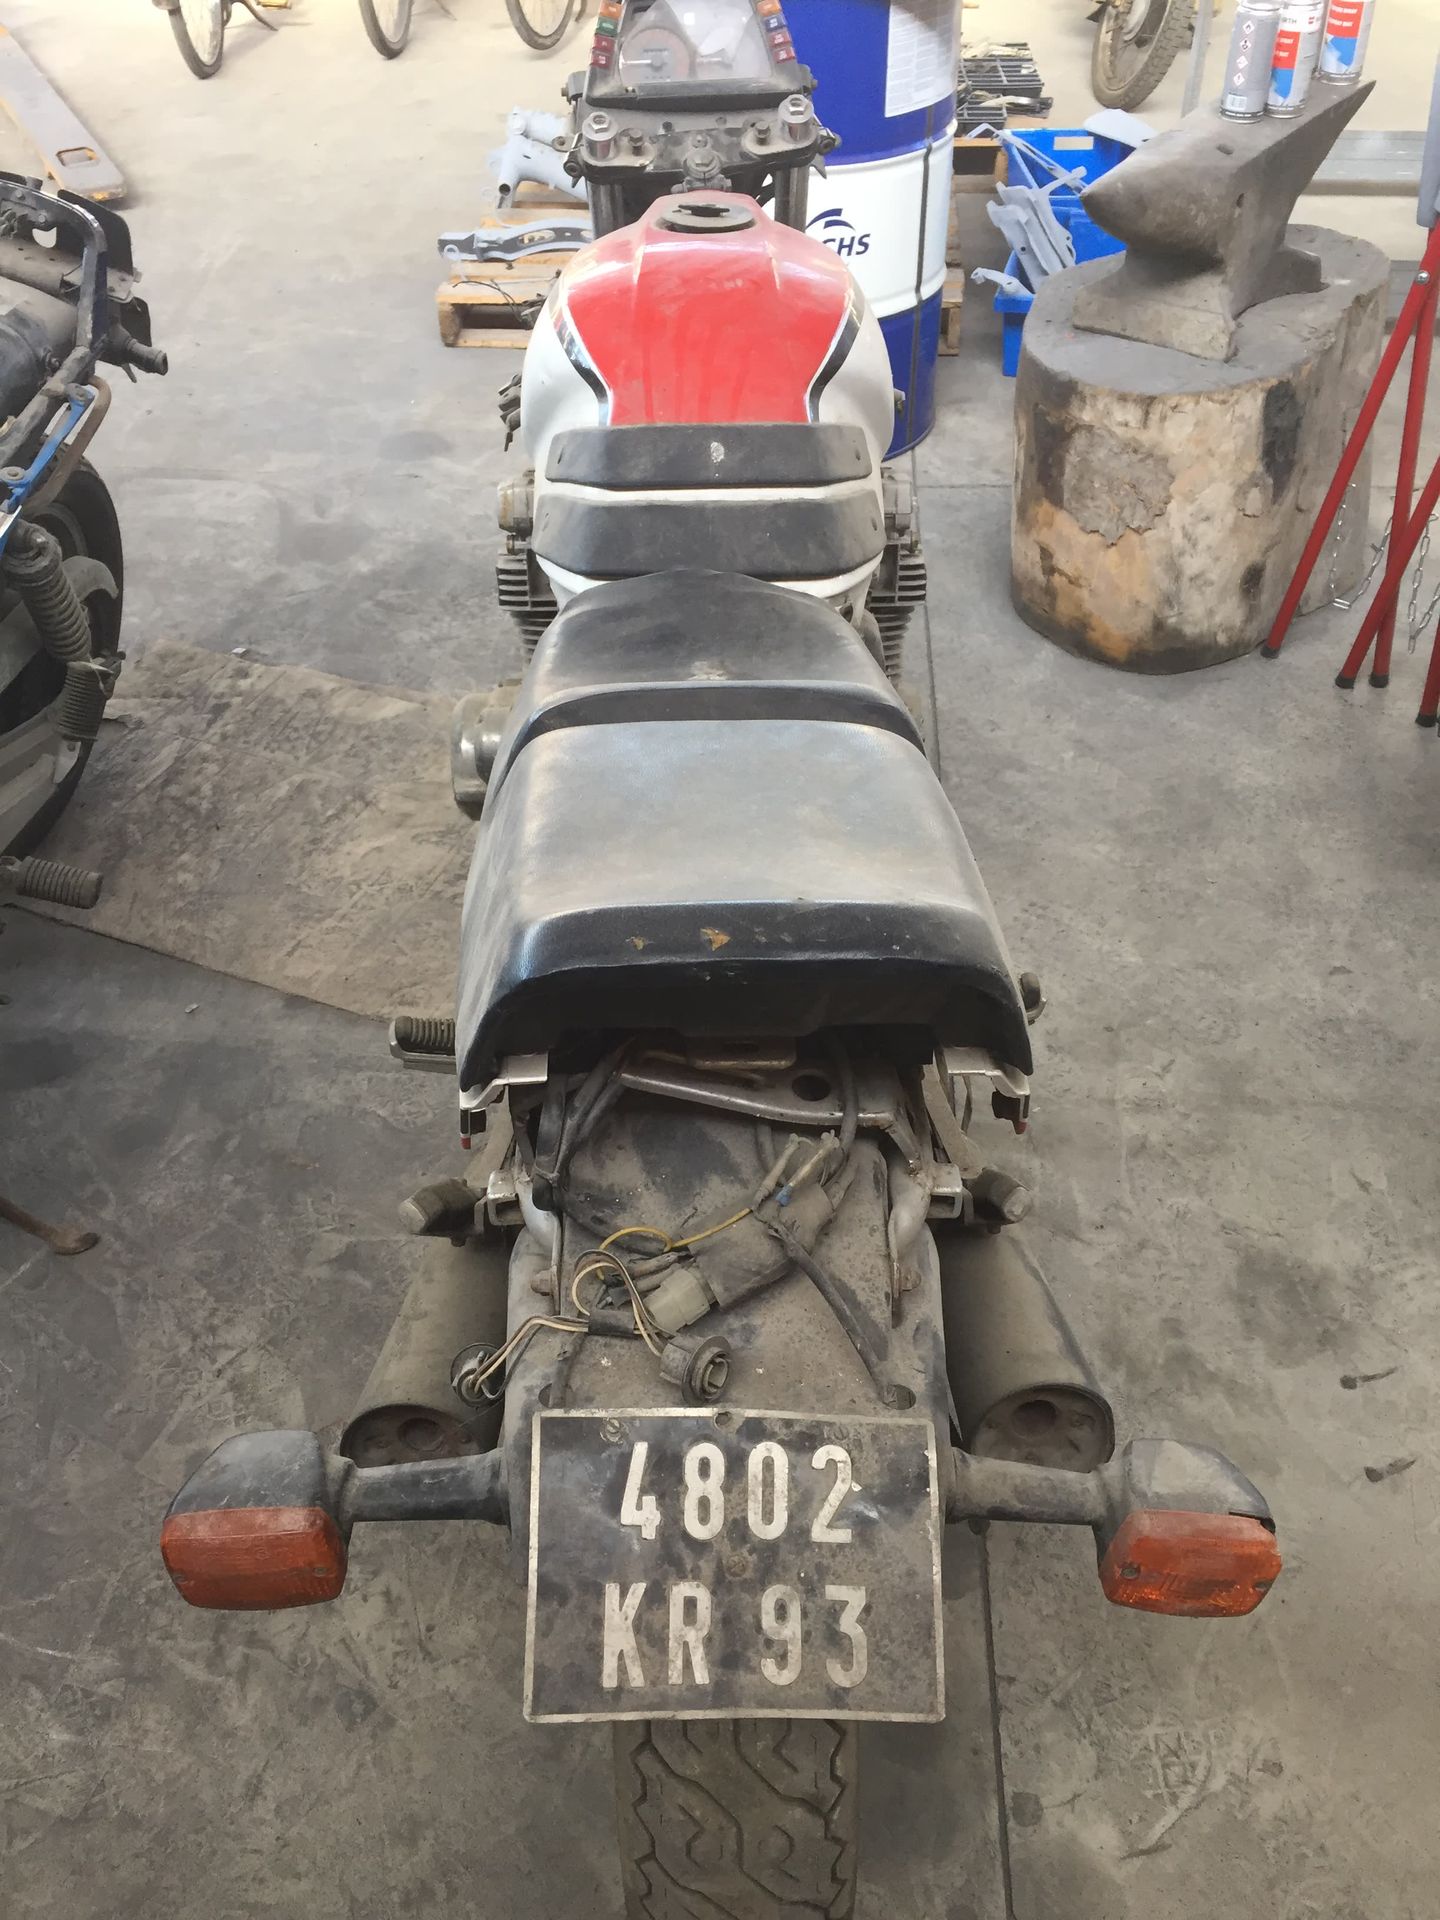 2 motos Suzuki GSX 1100 Eine Nr. 524298 mit dem Kennzeichen 9868 SY 67

Eine Nr.&hellip;